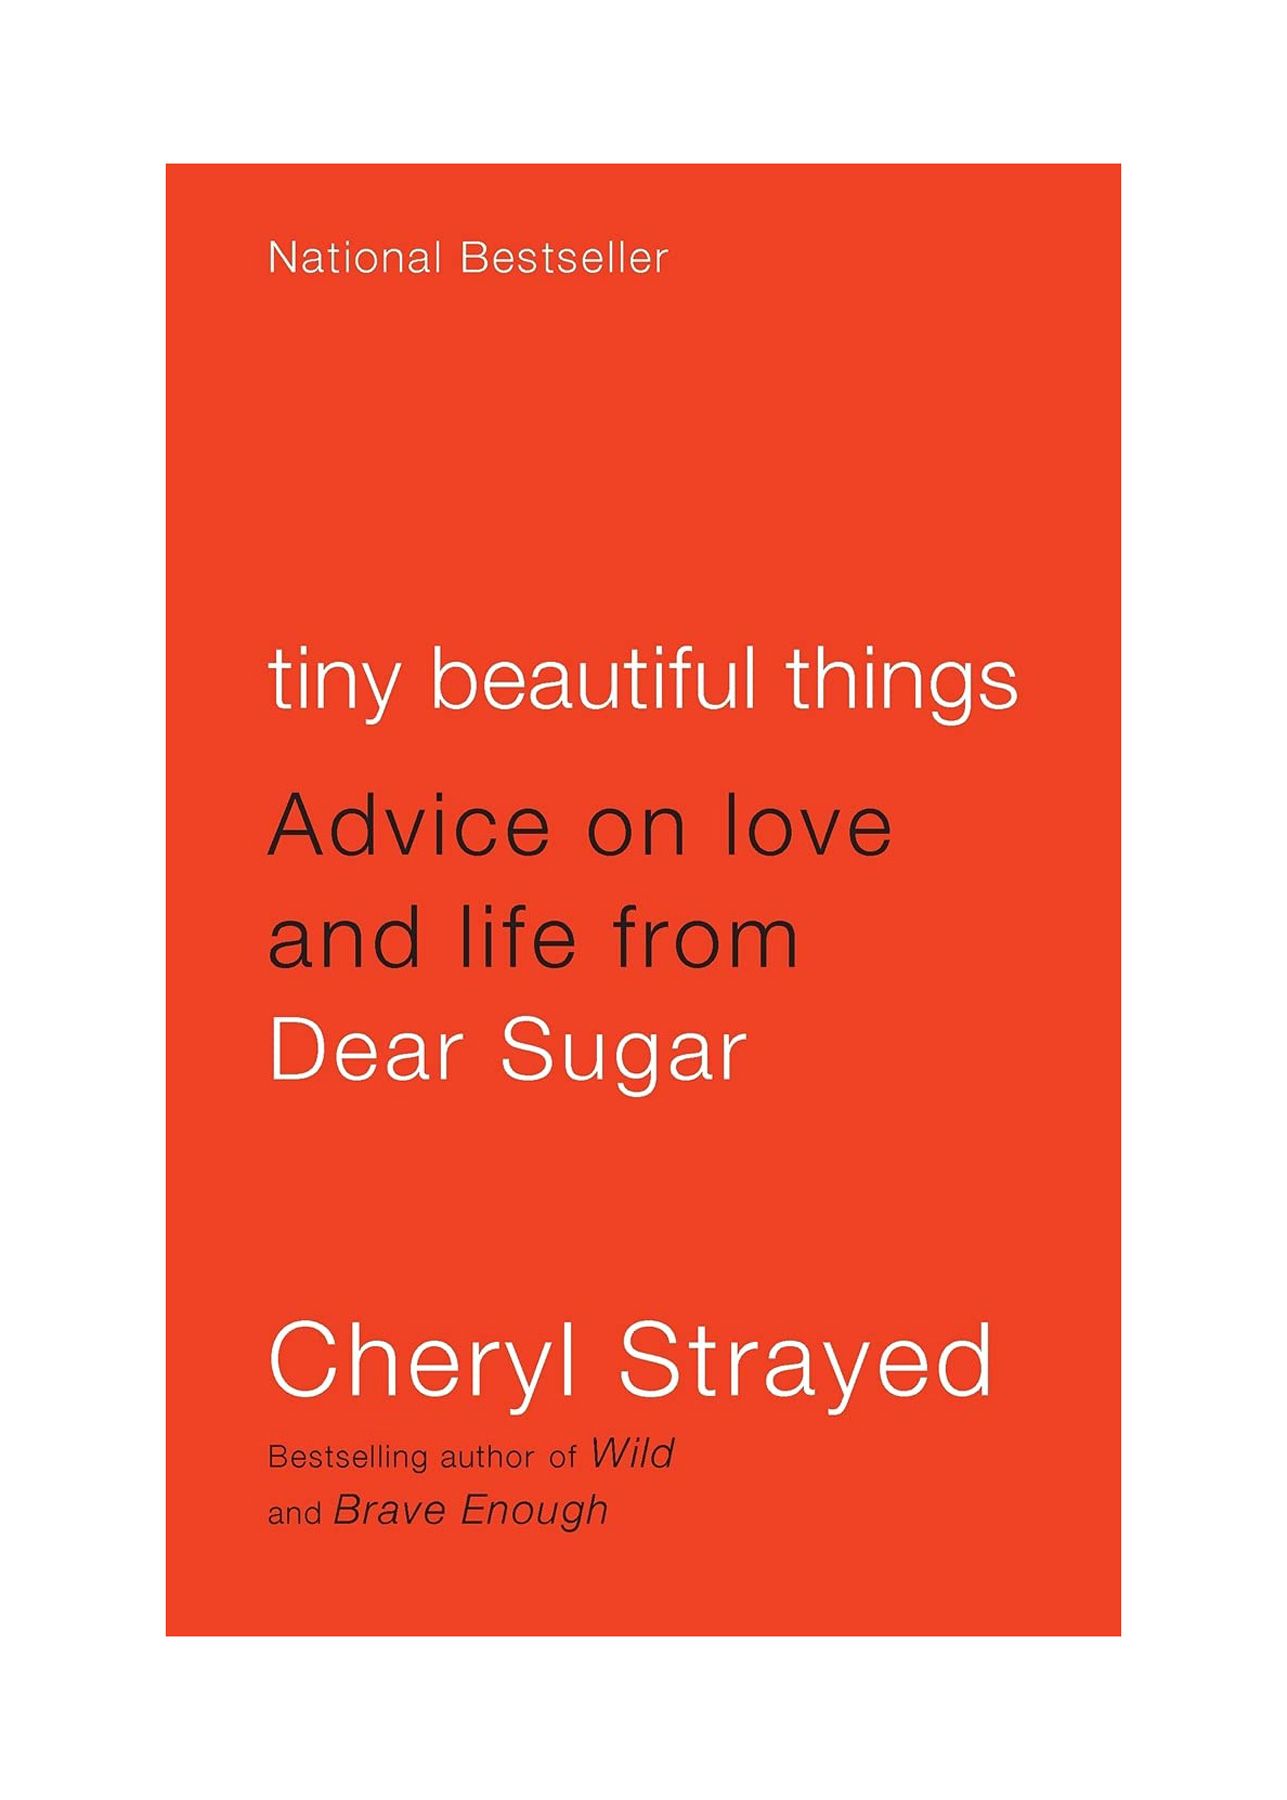 Գրքեր բաժանումների համար. փոքրիկ գեղեցիկ բաներ. խորհուրդներ սիրո և կյանքի մասին Dear Sugar-ից Շերիլ Սթրեյդից